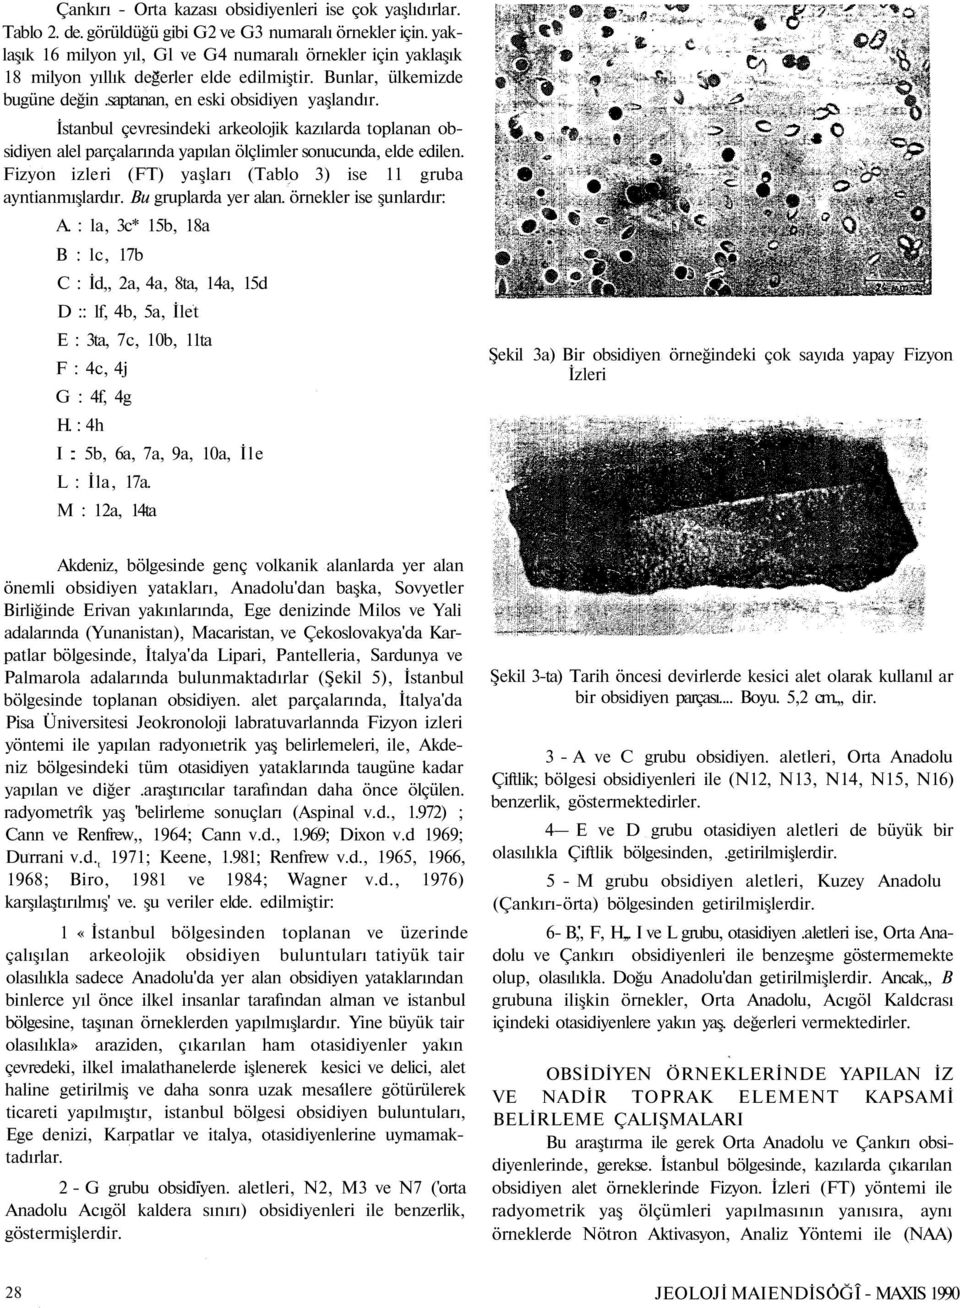 İstanbul çevresindeki arkeolojik kazılarda toplanan obsidiyen alel parçalarında yapılan ölçlimler sonucunda, elde edilen. Fizyon izleri (FT) yaşları (Tablo 3) ise 11 gruba ayntianmışlardır.